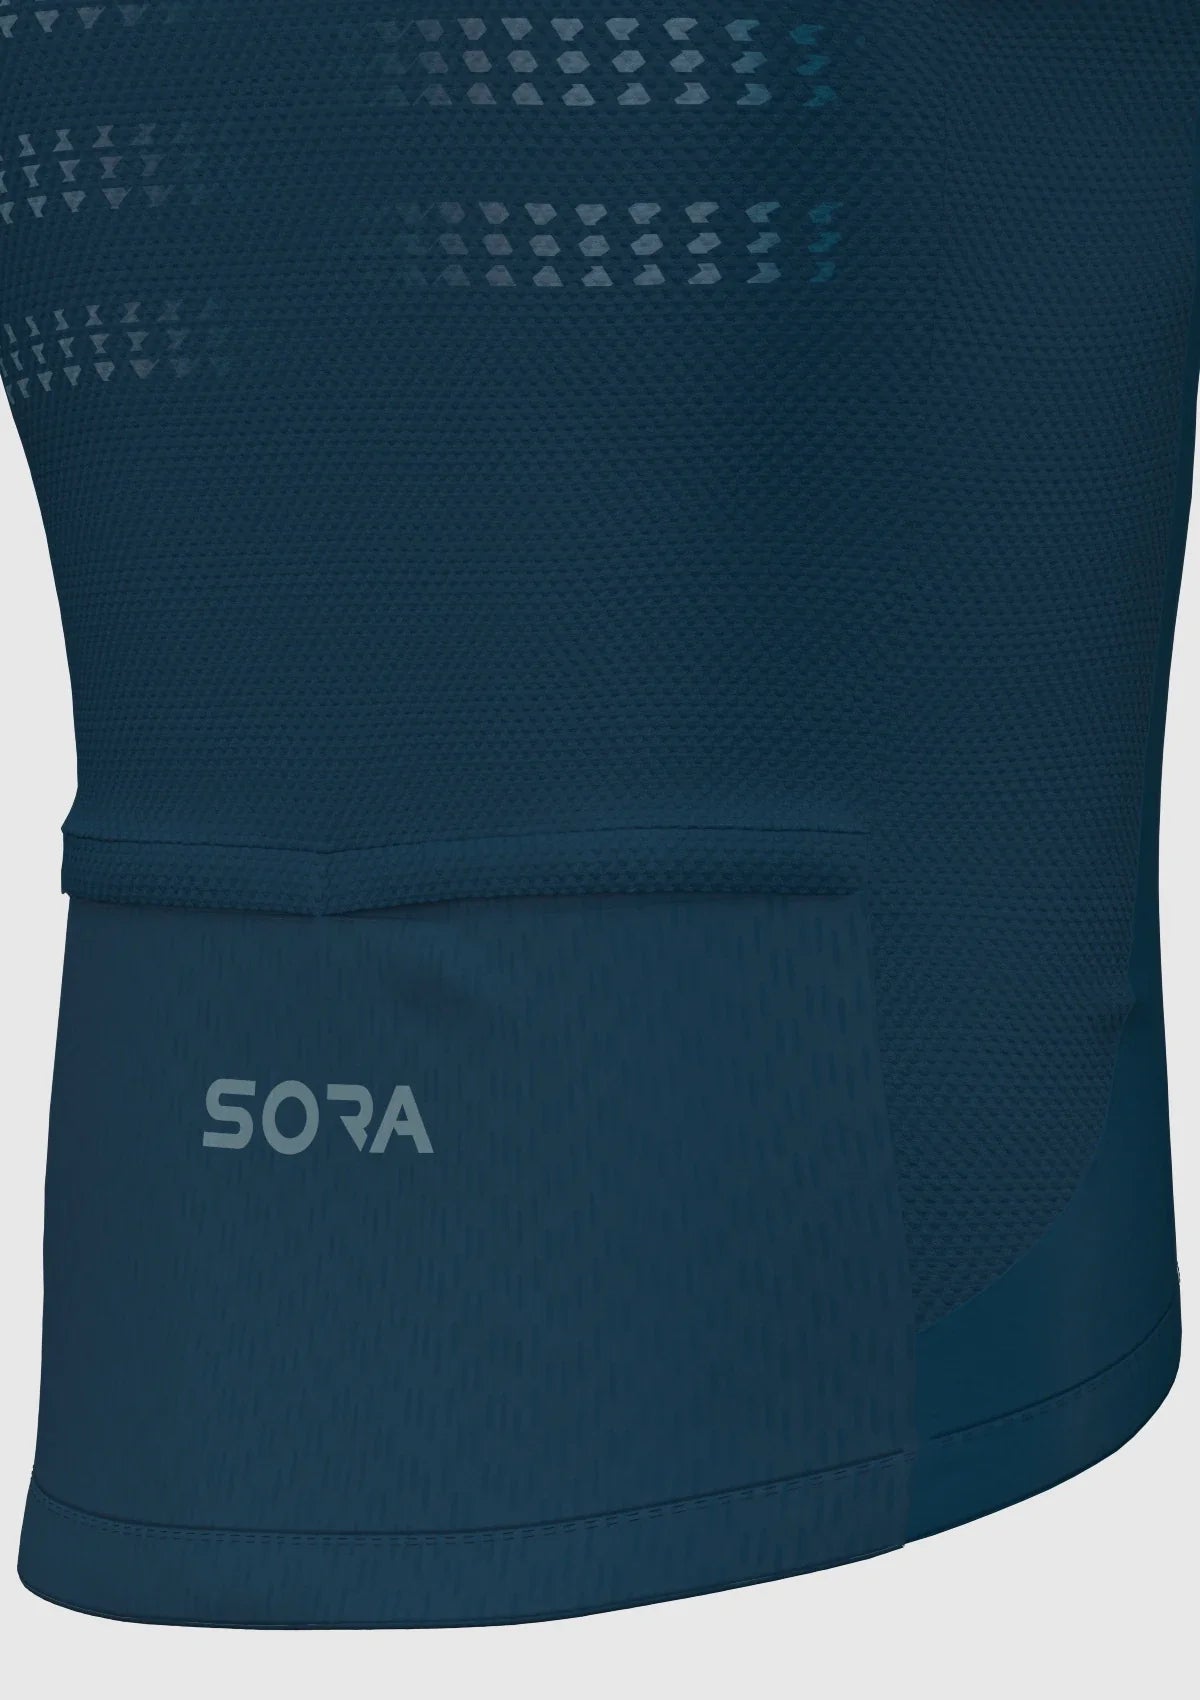 Ultra Light Navy Blue cycling vest